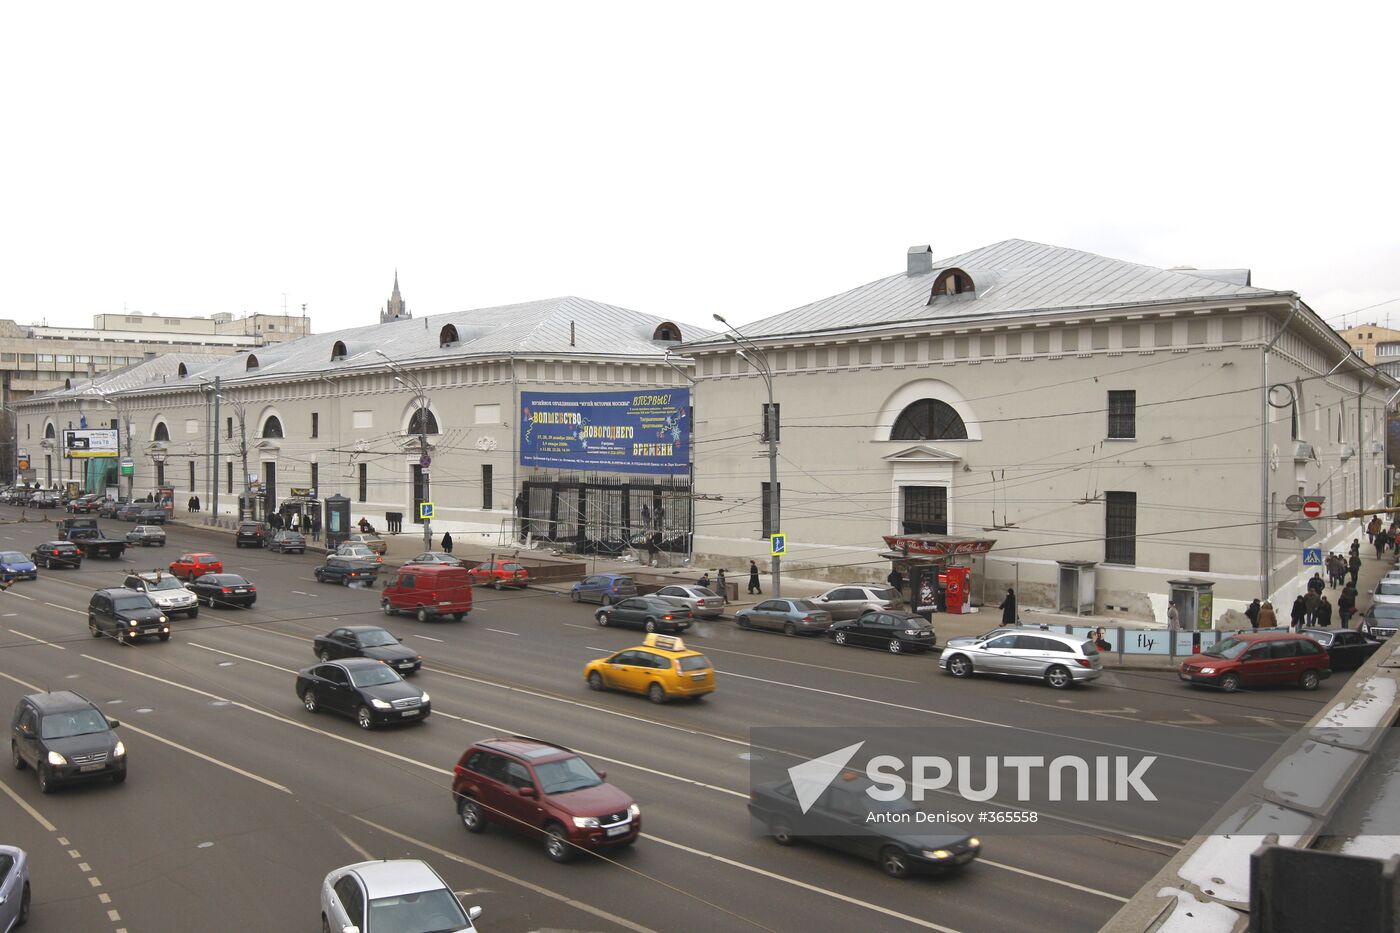 Proviantskiye Sklady on Moscow's Zubovsky Boulevard